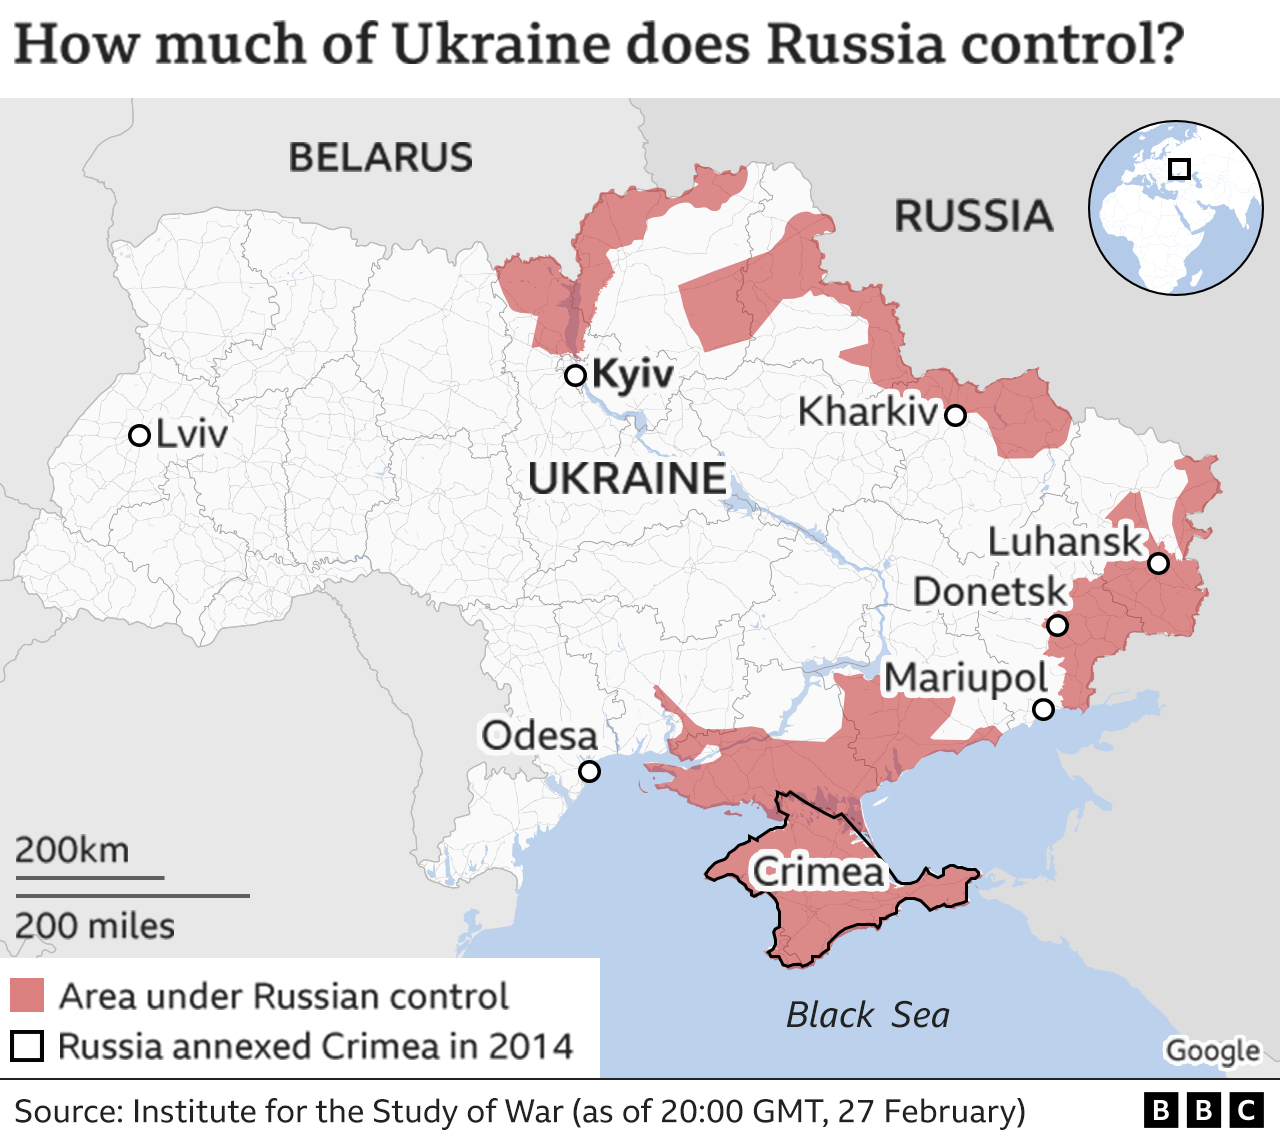 Bản đồ mở rộng lãnh thổ Nga tại Ukraine đến năm 2024:
Đã đến lúc để chúng ta nhìn nhận về tương lai hơn là những cơn đau khổ trong quá khứ. Chỉ còn vài năm nữa, chúng ta sẽ thấy bản đồ Ukraine được mở rộng và phát triển một cách tự nhiên, đem lại sự bình yên và tiến bộ cho cả khu vực này. Hãy cùng nâng cao nhận thức và hy vọng tới tương lai tươi sáng hơn.